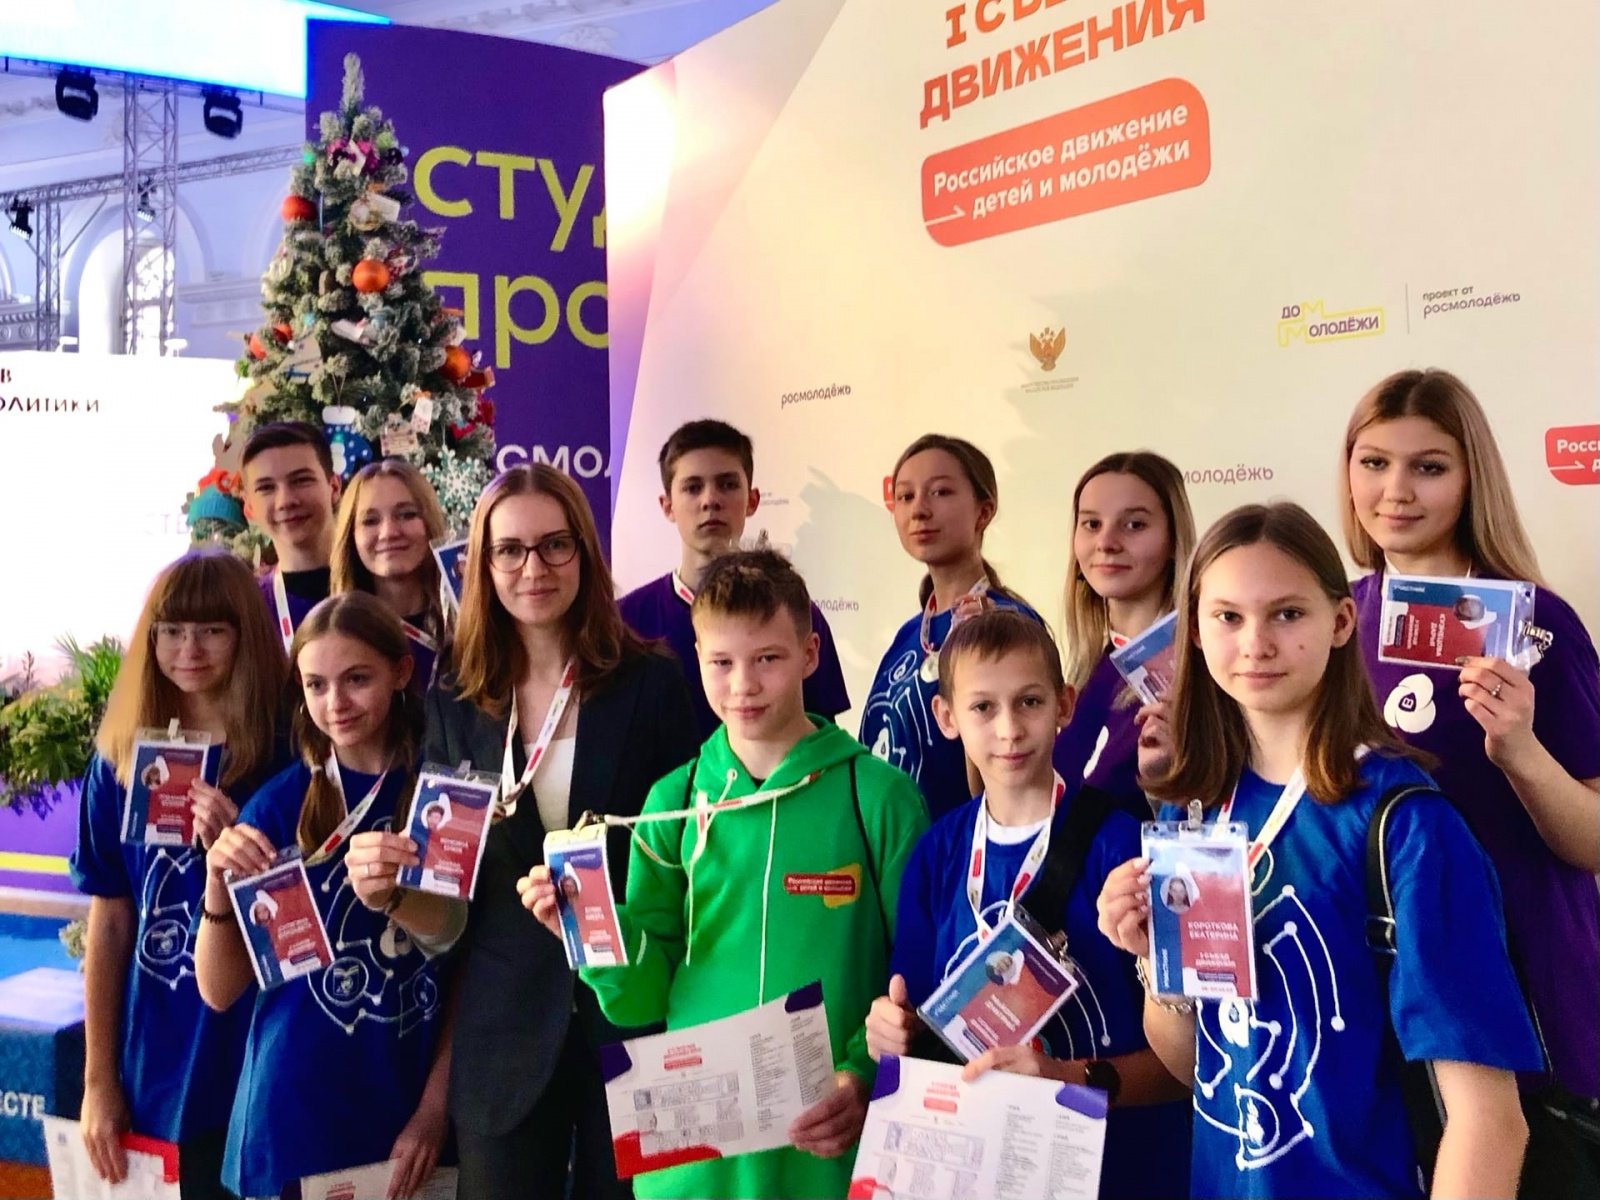 «Движение первых»: Российское движение детей и молодежи